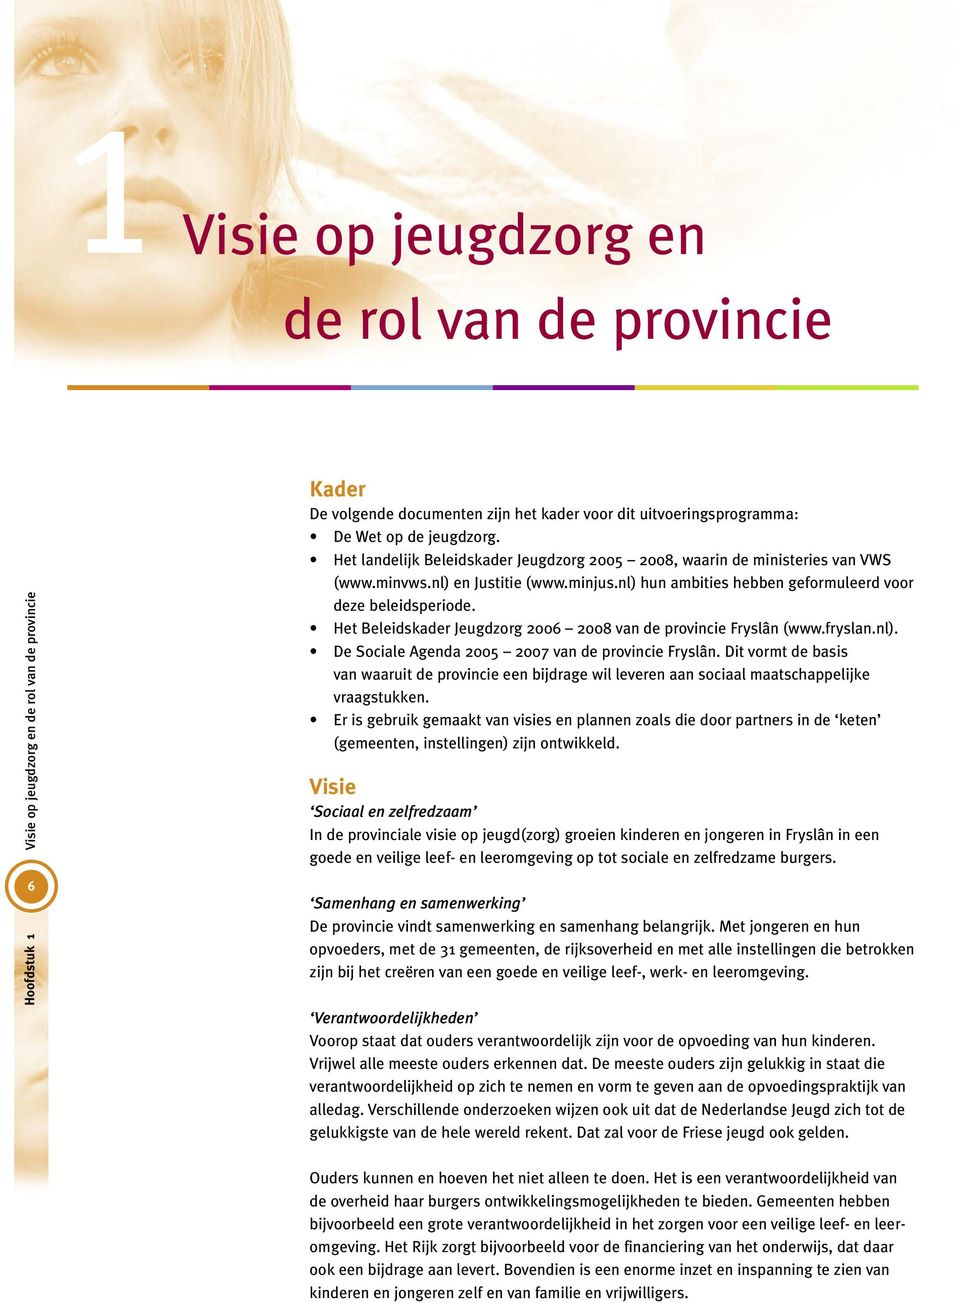 Het Beleidskader Jeugdzorg 2006 2008 van de provincie Fryslân (www.fryslan.nl). De Sociale Agenda 2005 2007 van de provincie Fryslân.